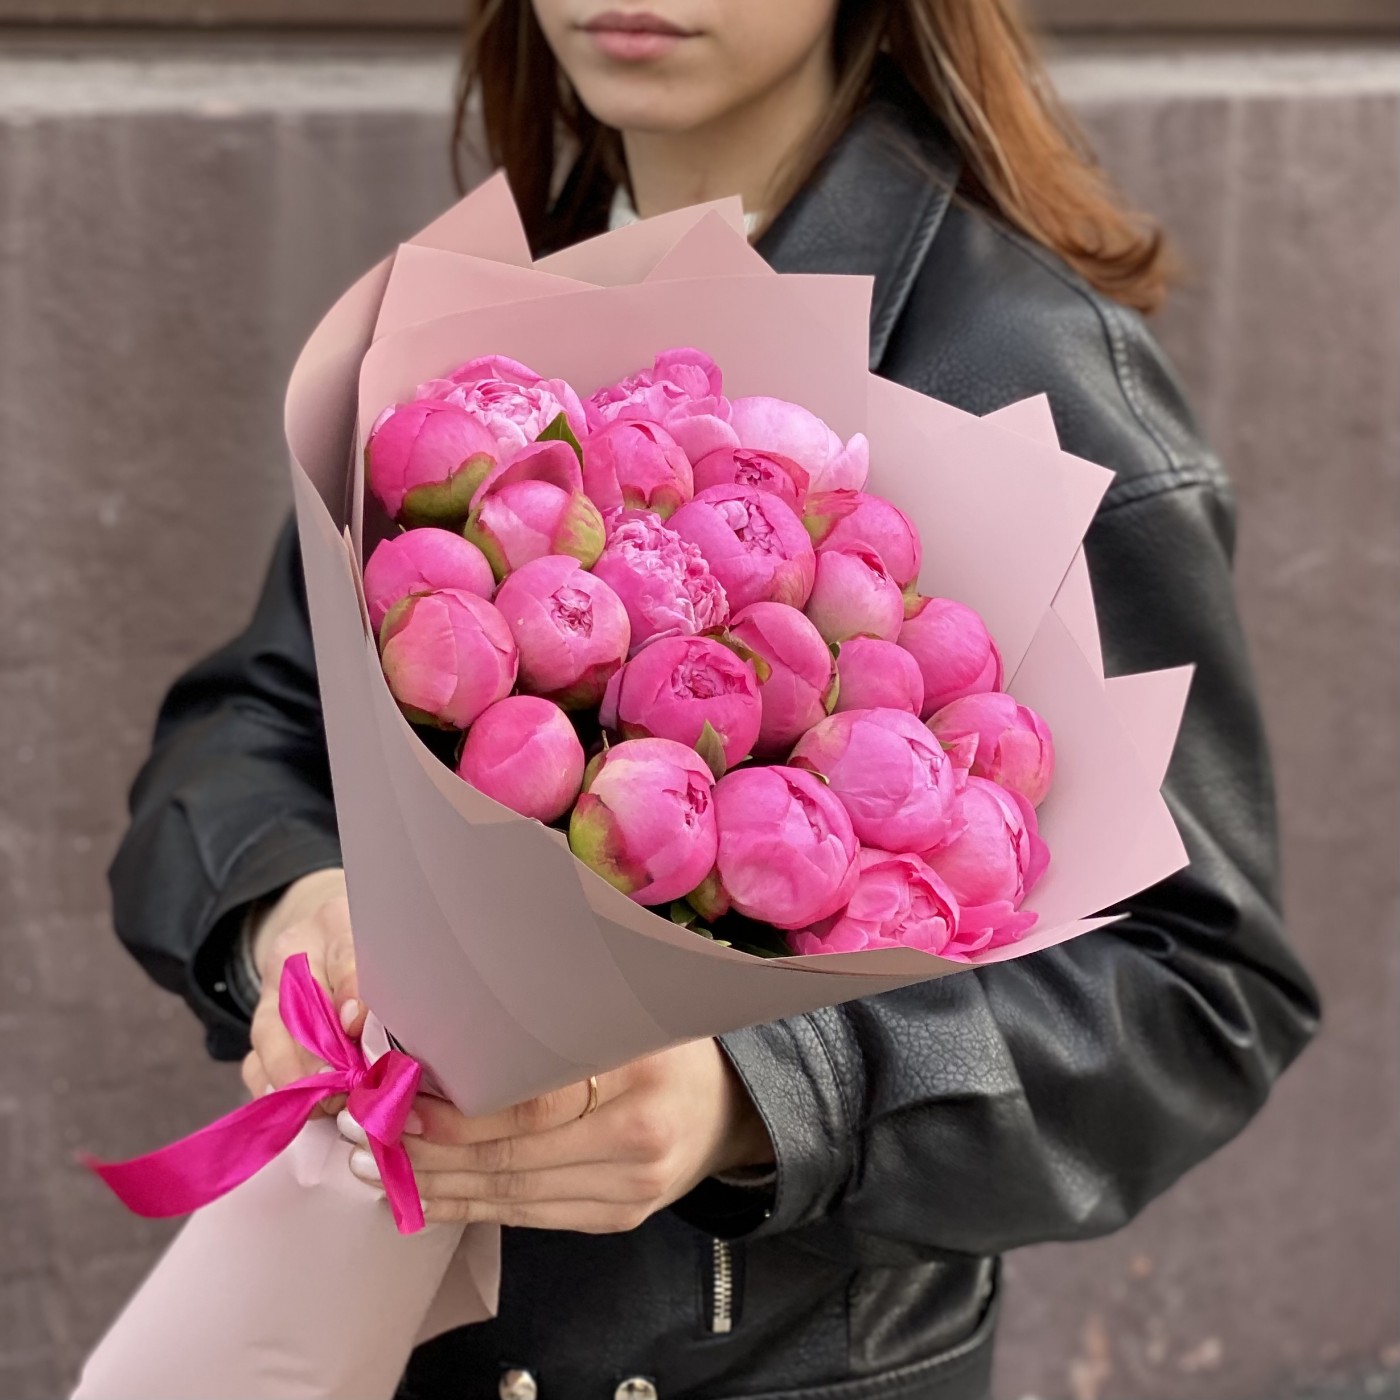 25 розовых пионов Флеминг